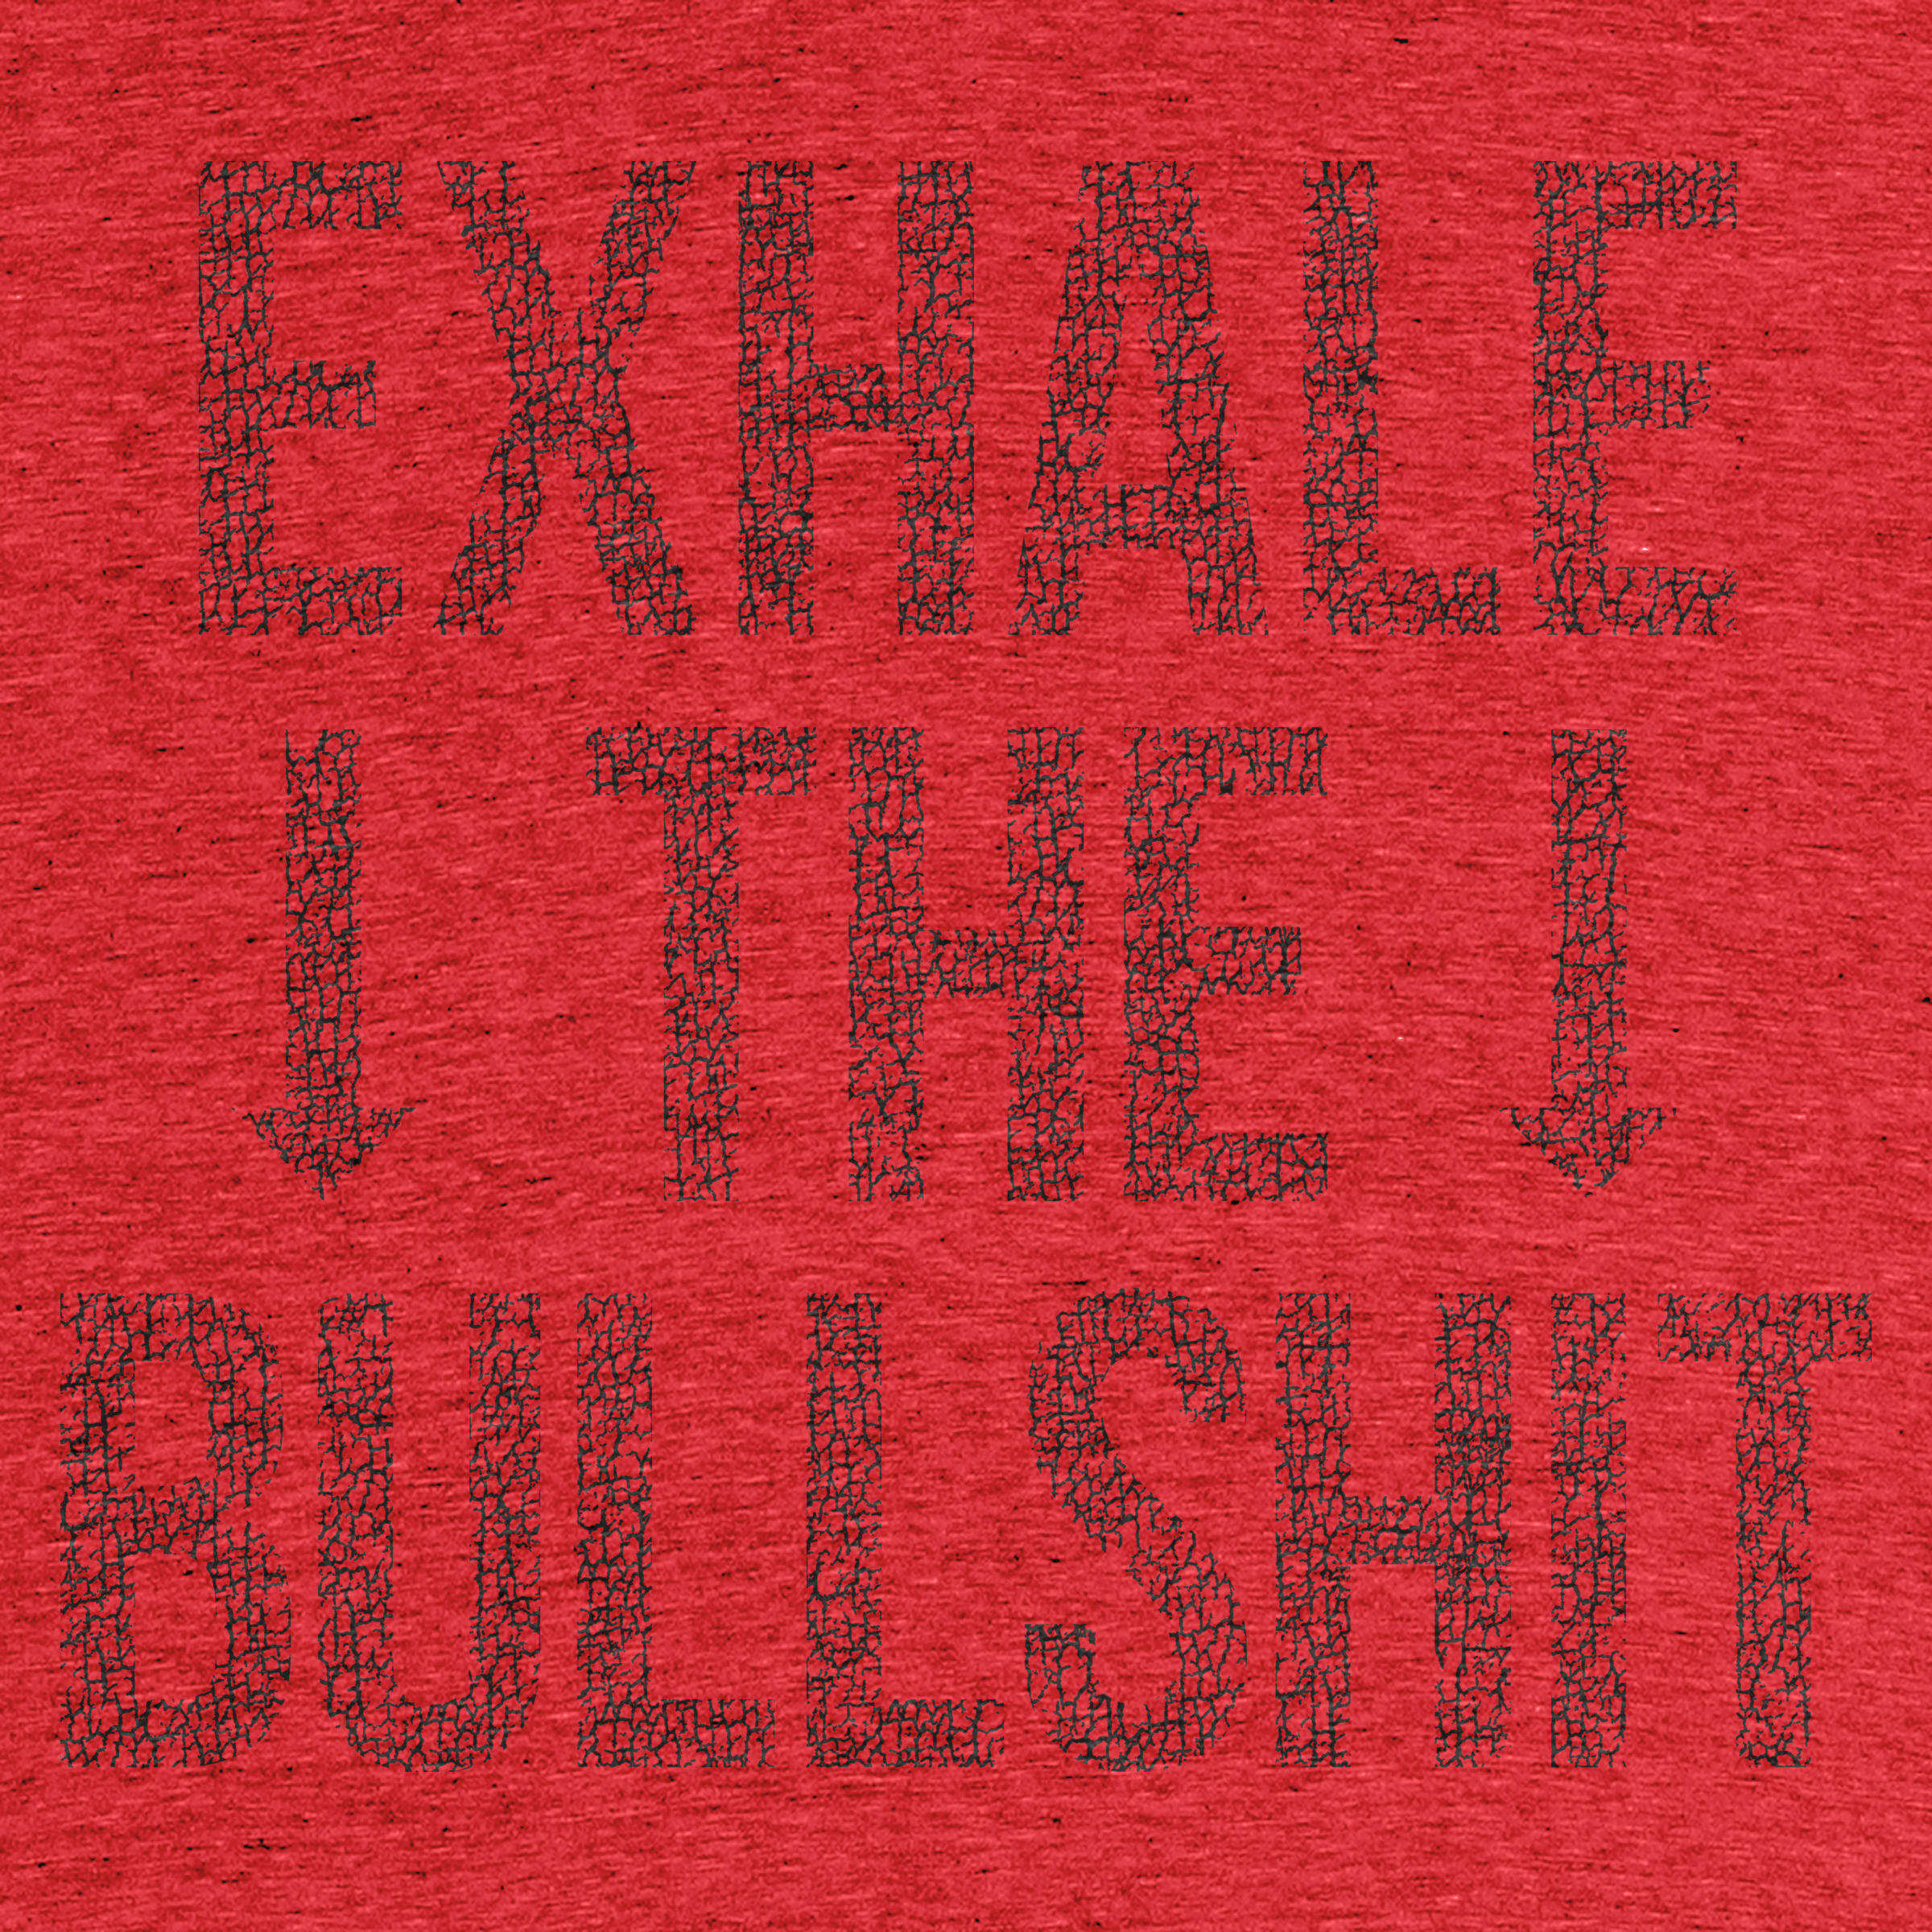 exhale-the-bullshit-–-0038-–-Detail